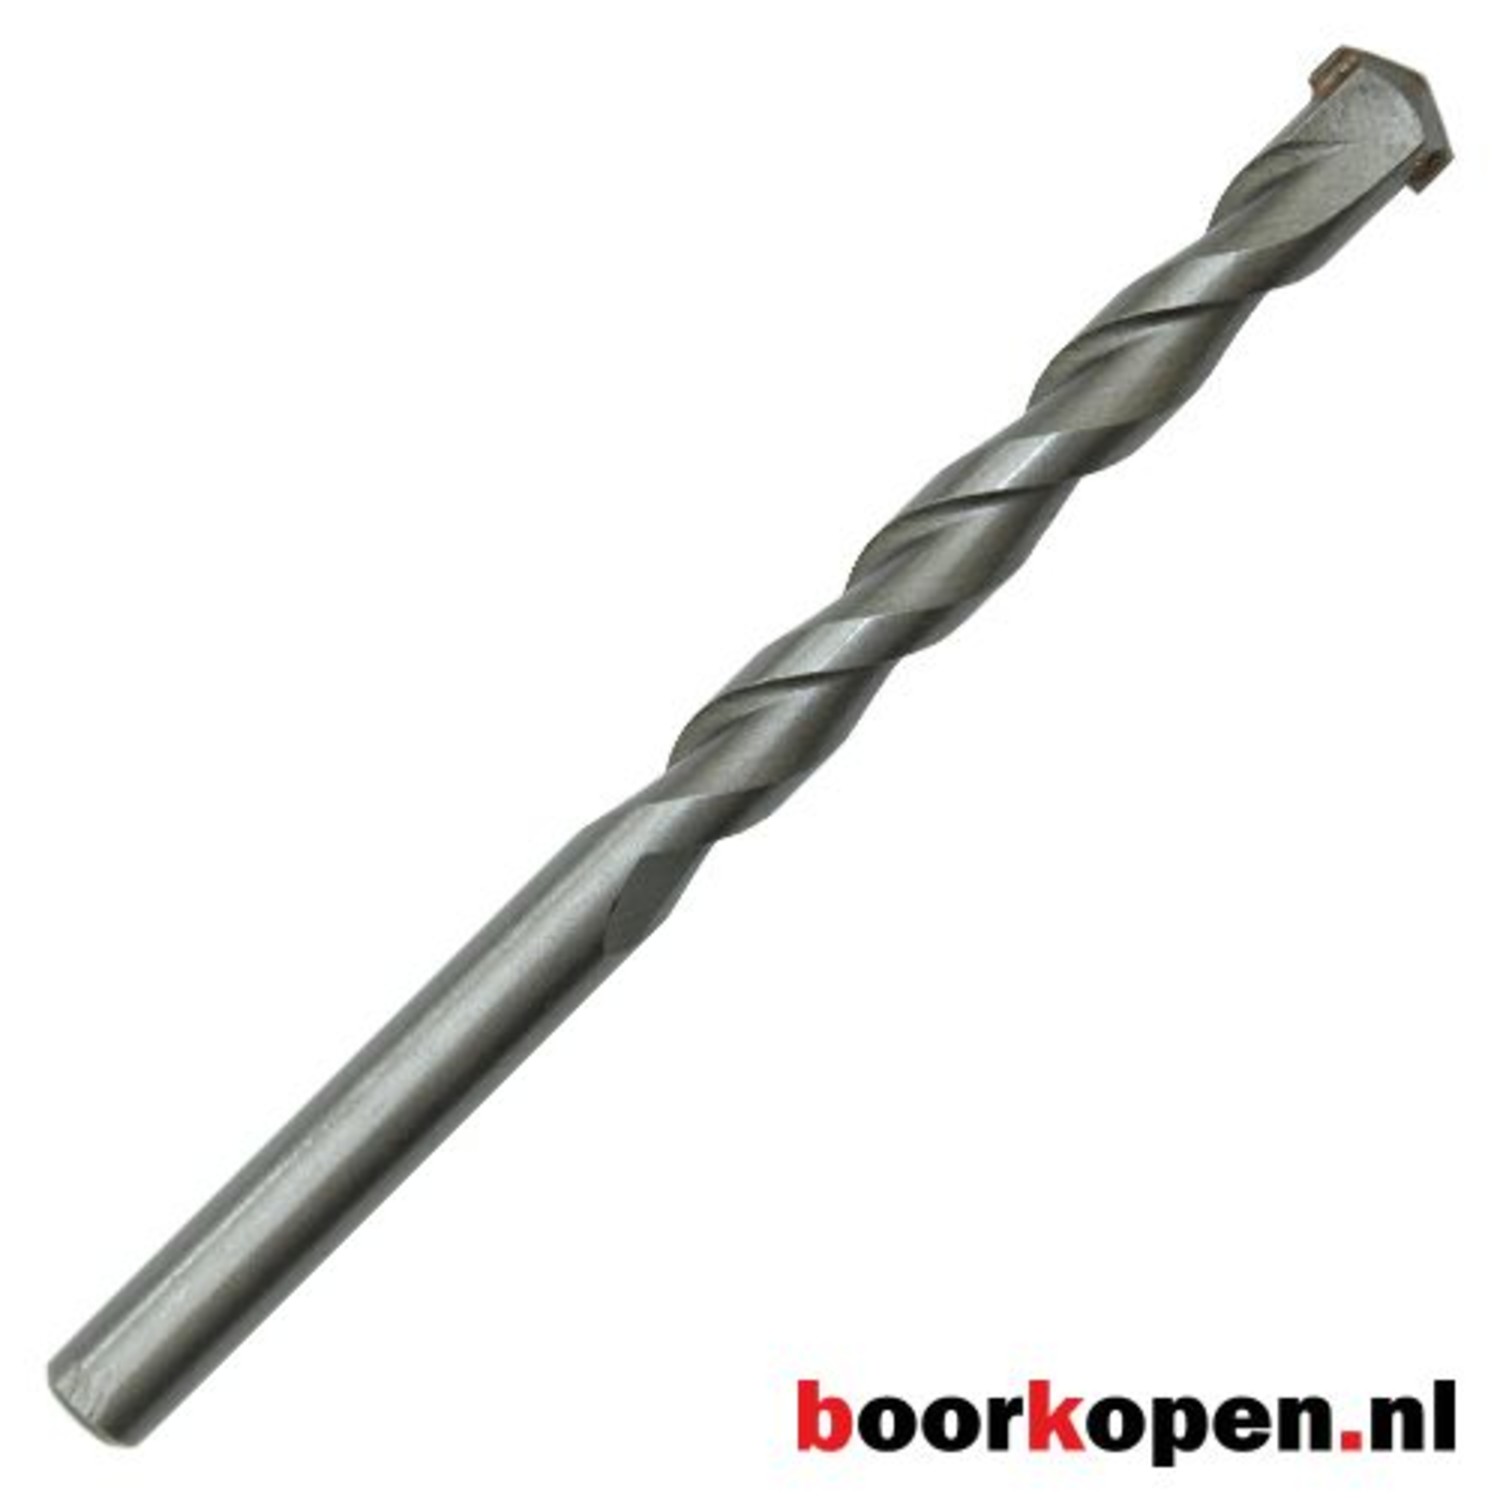 Onbevredigend nietig uitblinken Betonboor 22 mm - Boorkopen.nl